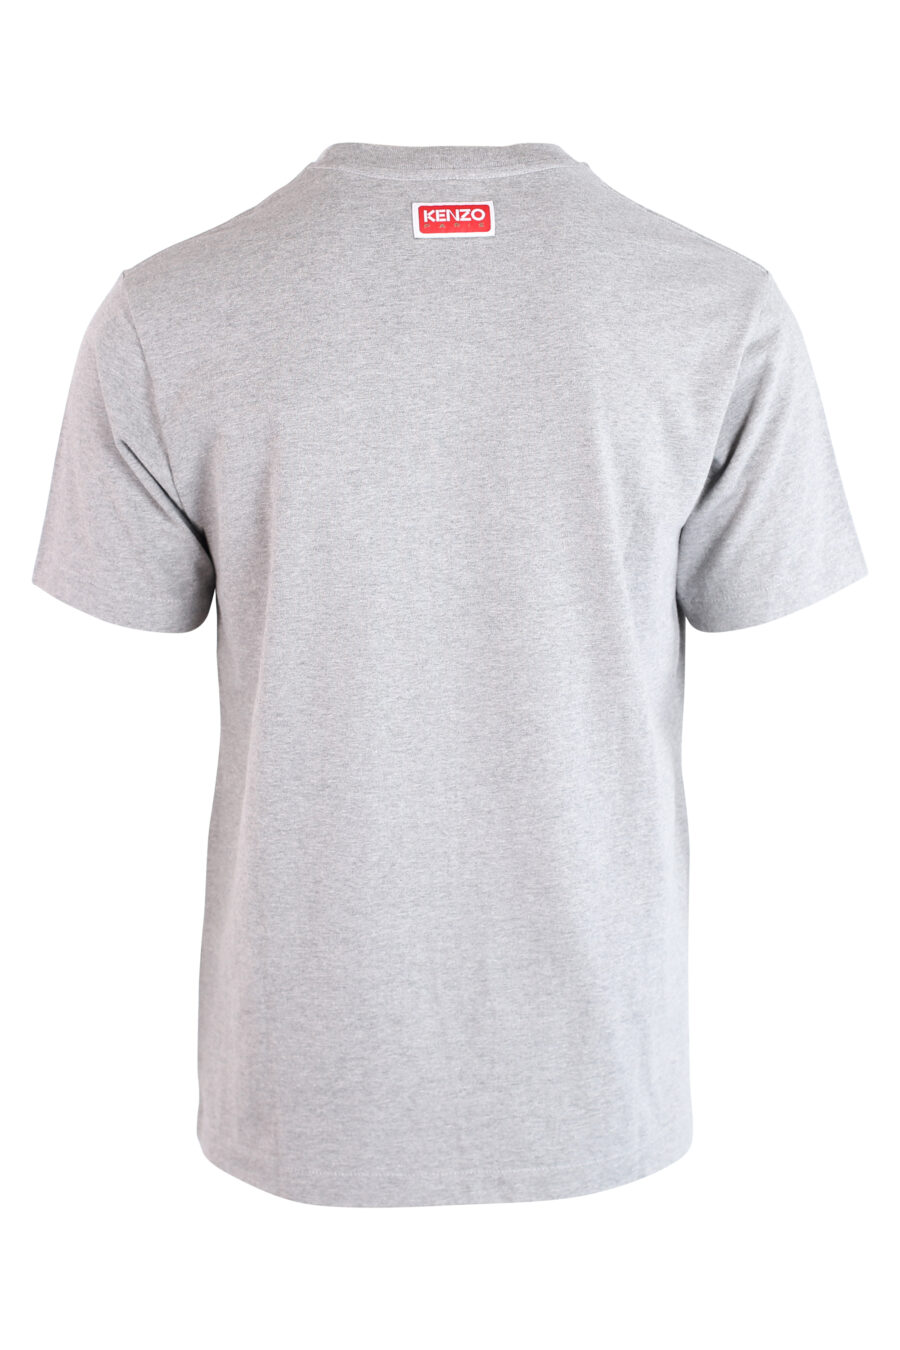 Camiseta gris con maxilogo "K" violeta - IMG 3202